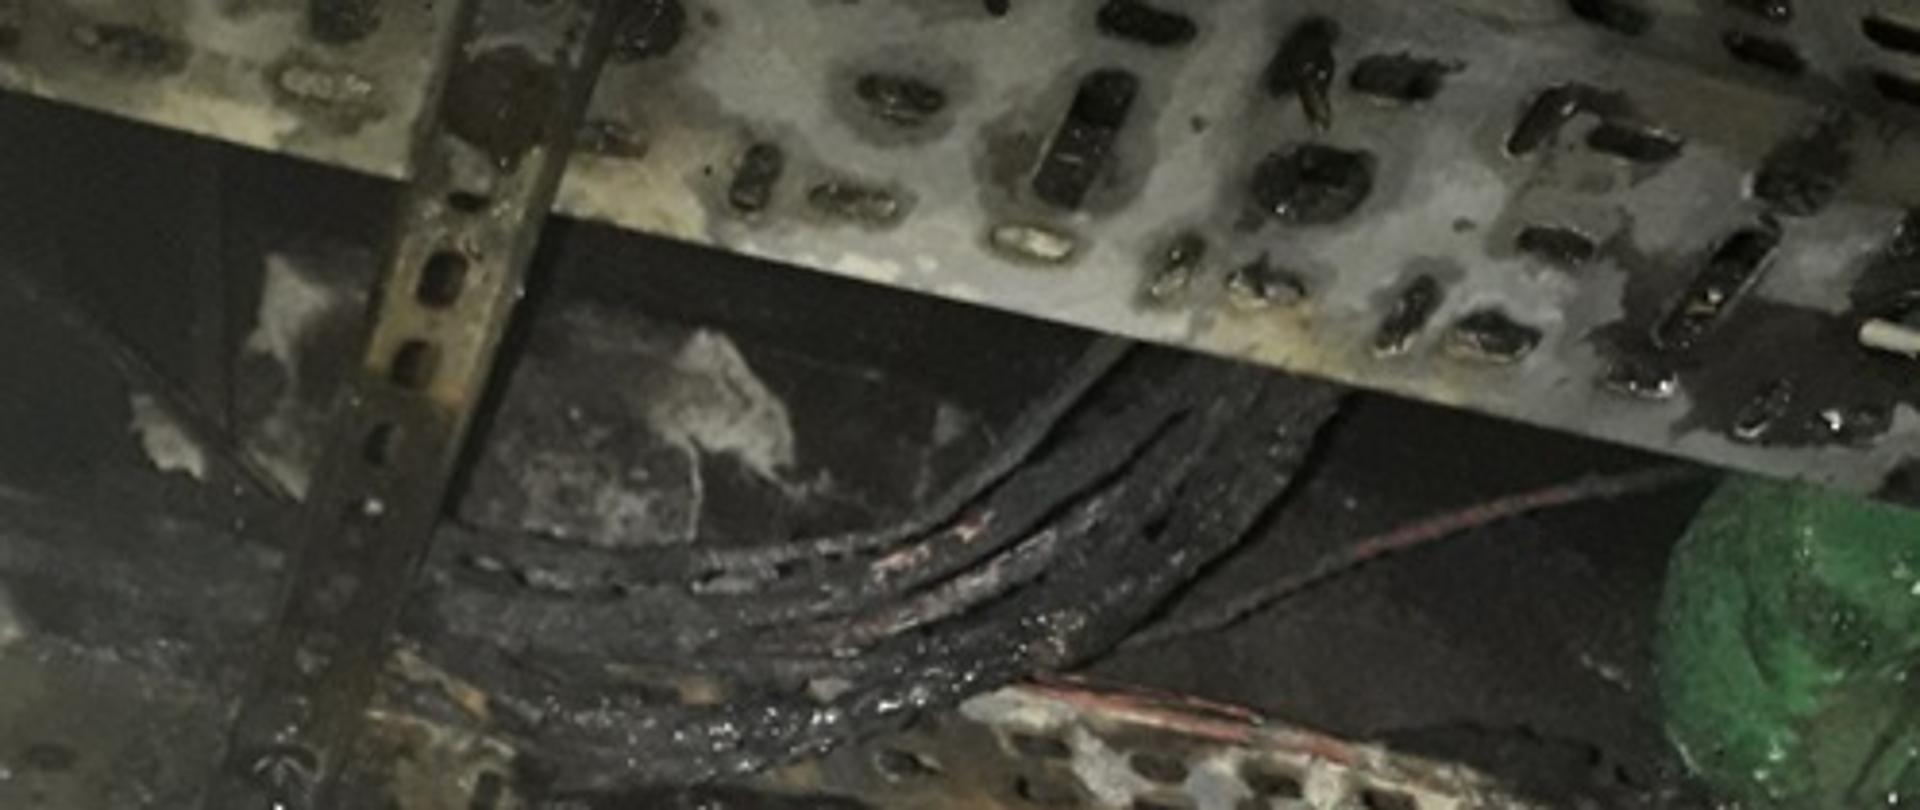 Na zdjęciu spalona plastikowa rozdzielnia. U góry na zdjęciu widać spalone przewody elektryczne w tunelu kablowym